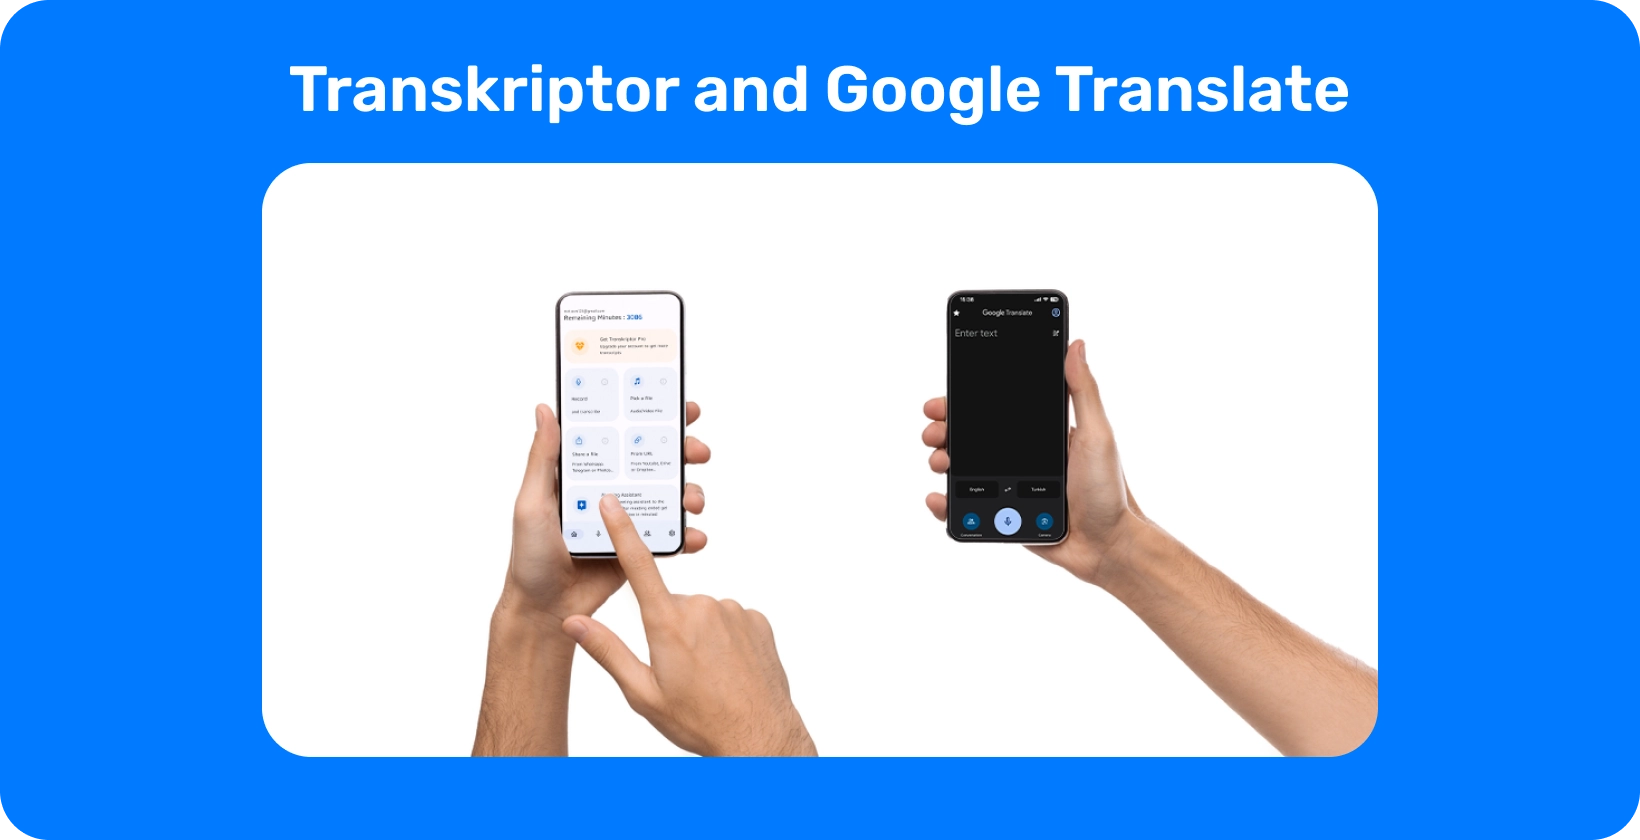 Дві руки тримають смартфони з Transkriptor та Google Translate, демонструючи транскрипцію та переклад аудіо.